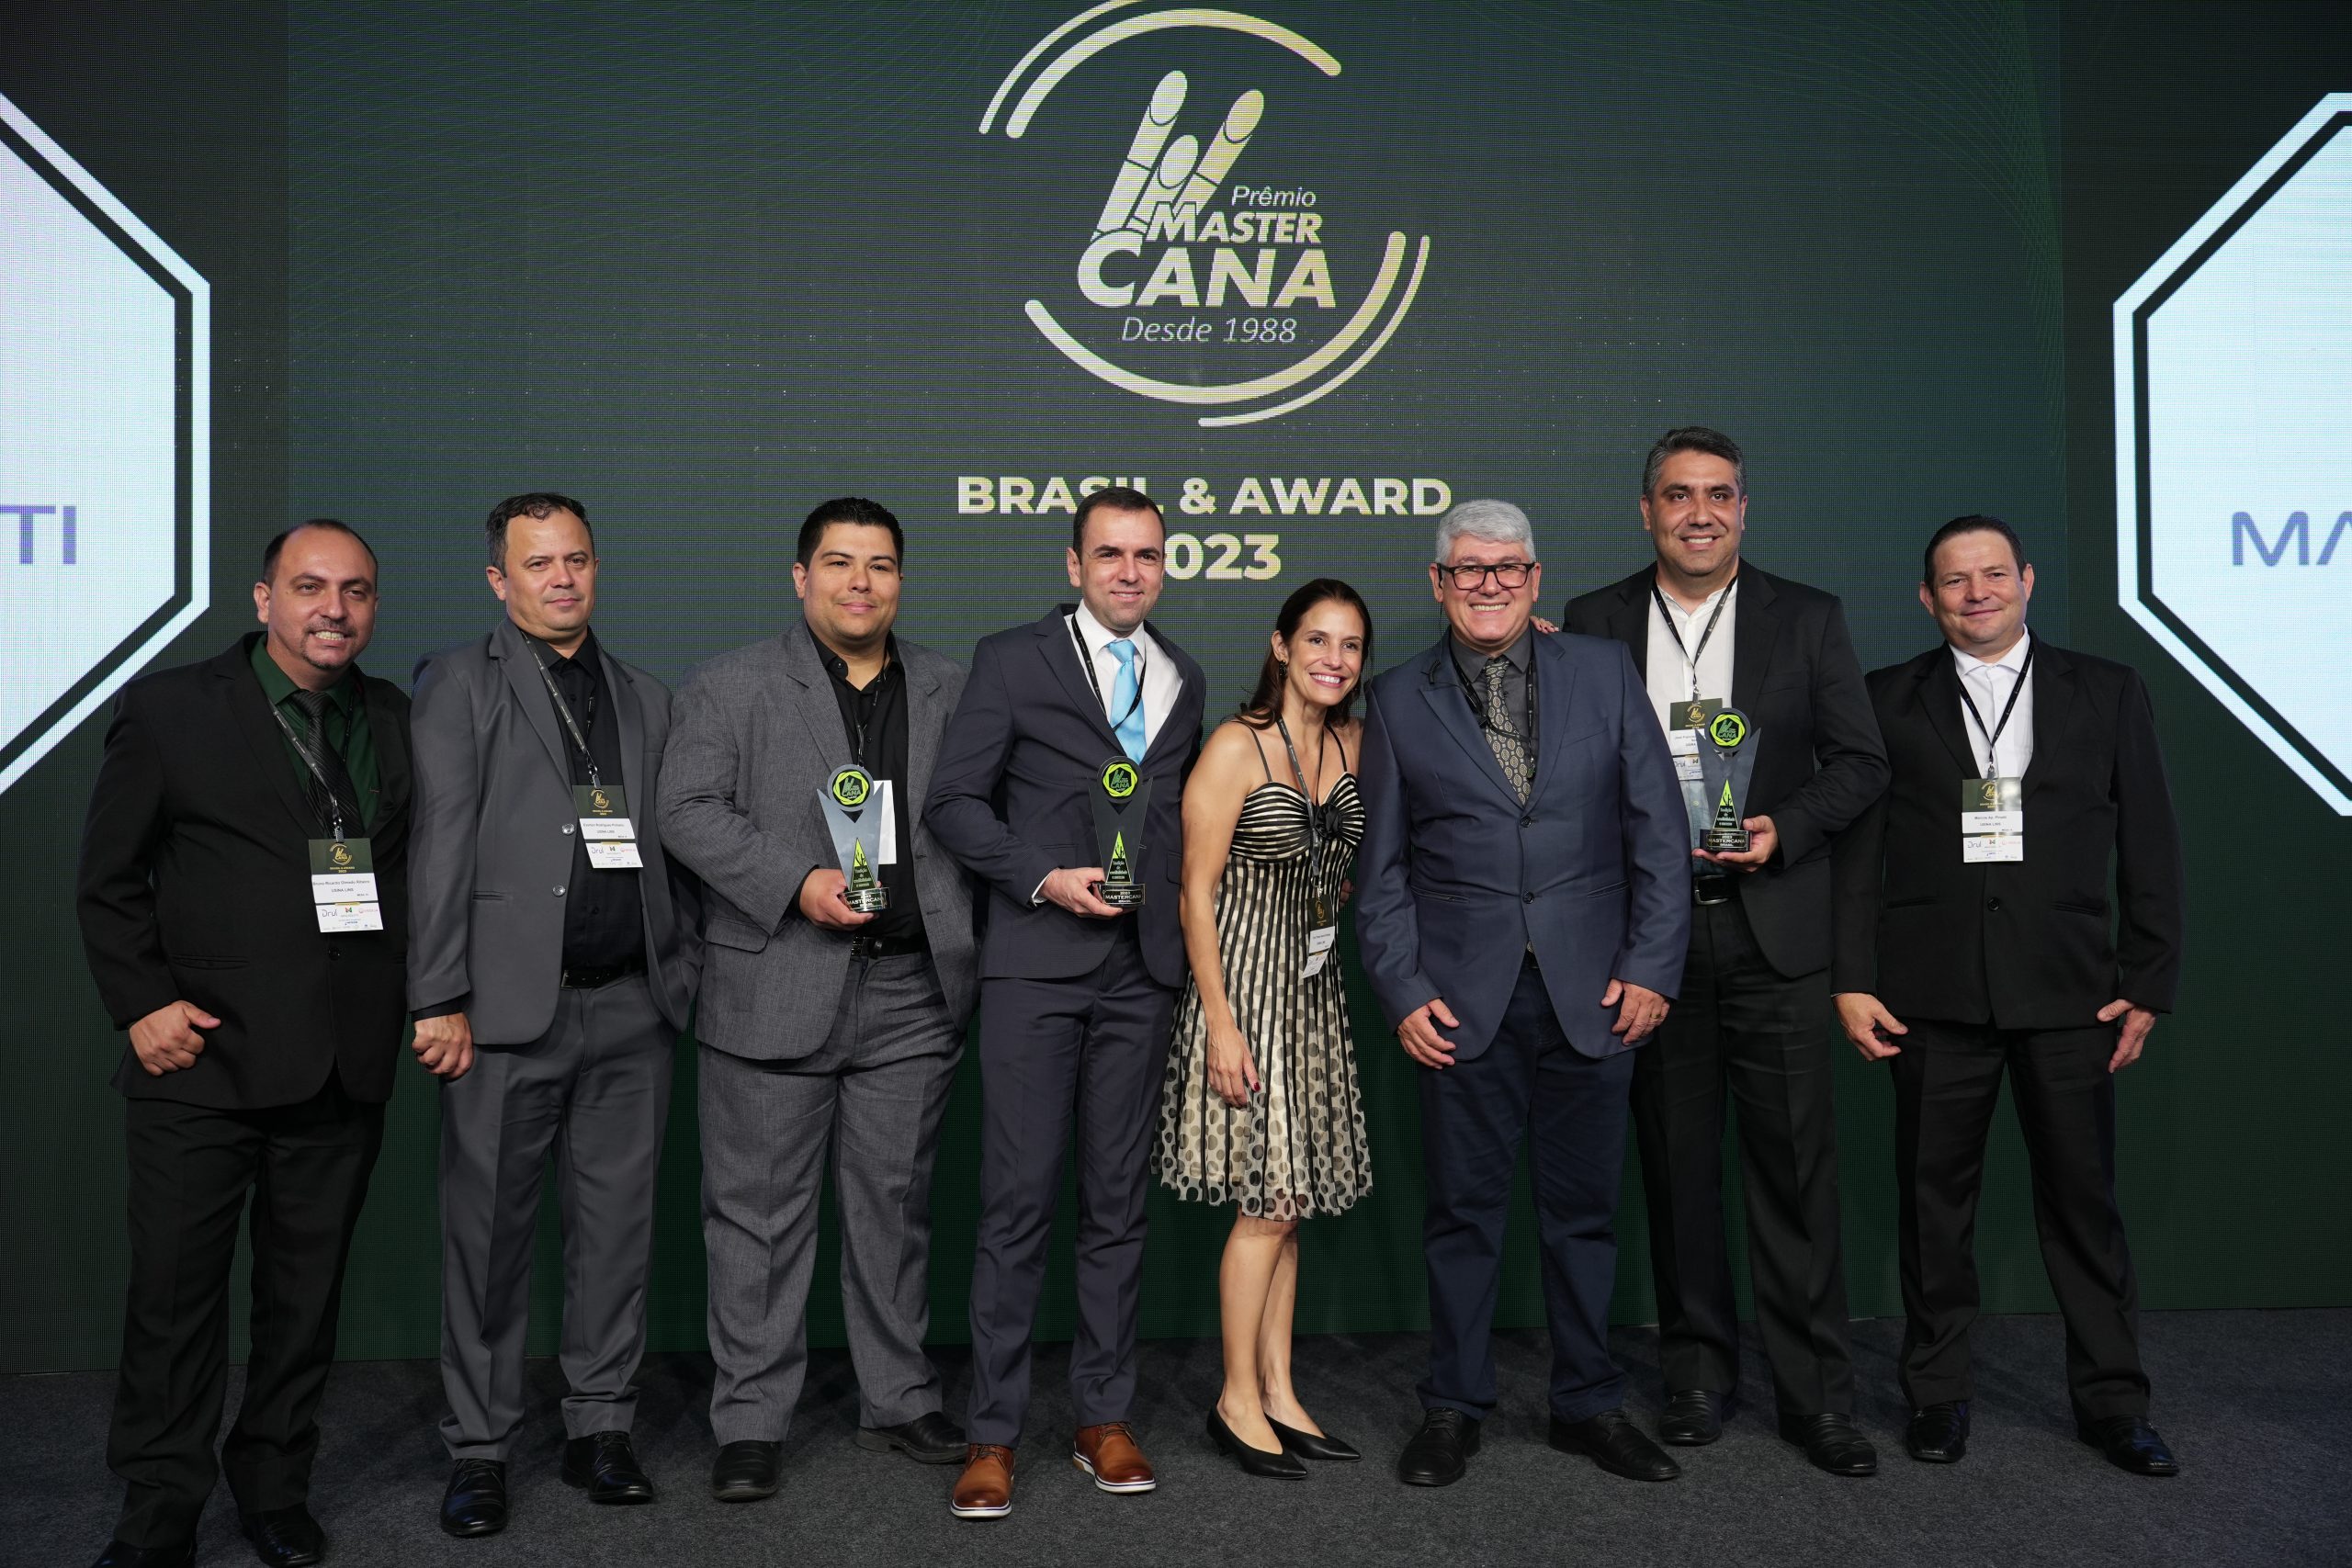 Usina Lins conquista três prêmios no  MasterCana Brasil e Award 2023